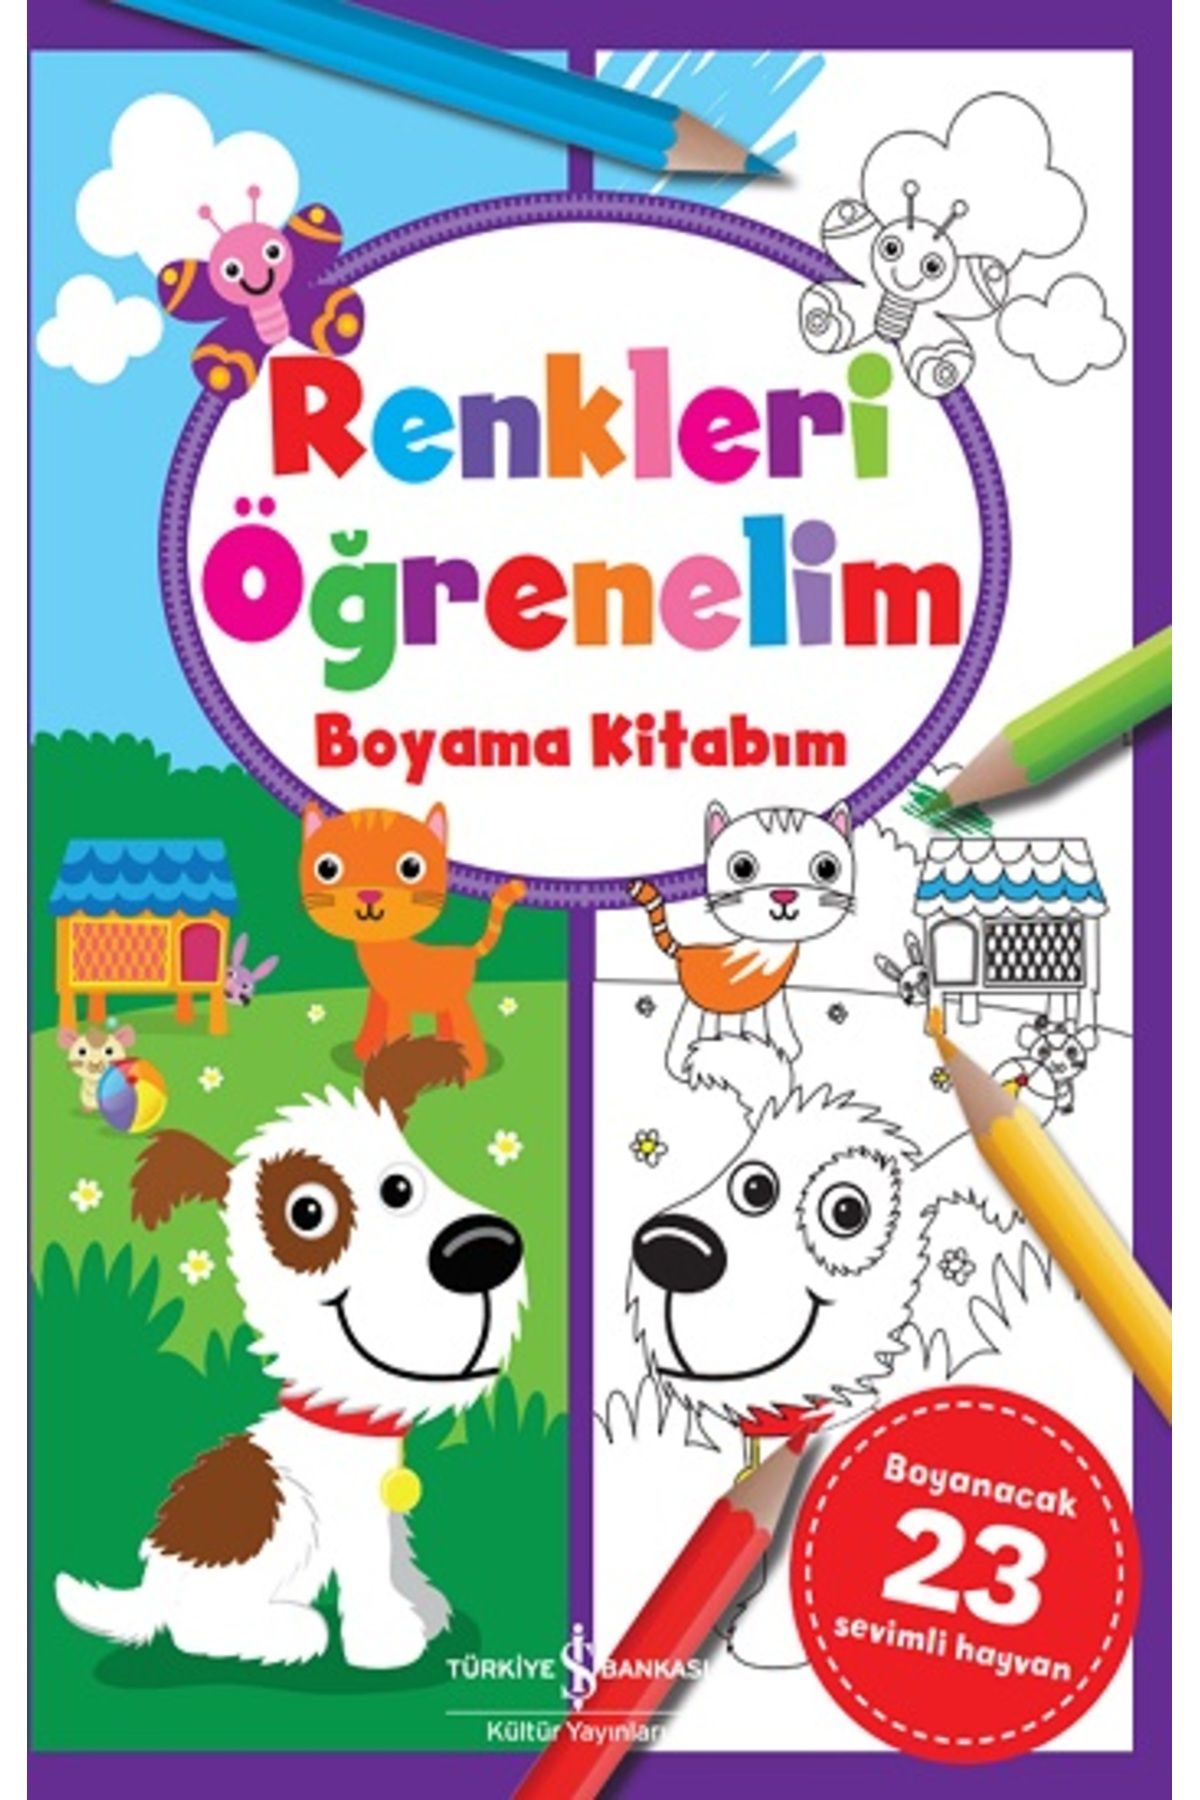 Türkiye İş Bankası Kültür Yayınları Renkleri Öğrenelim Boyama Kitabım